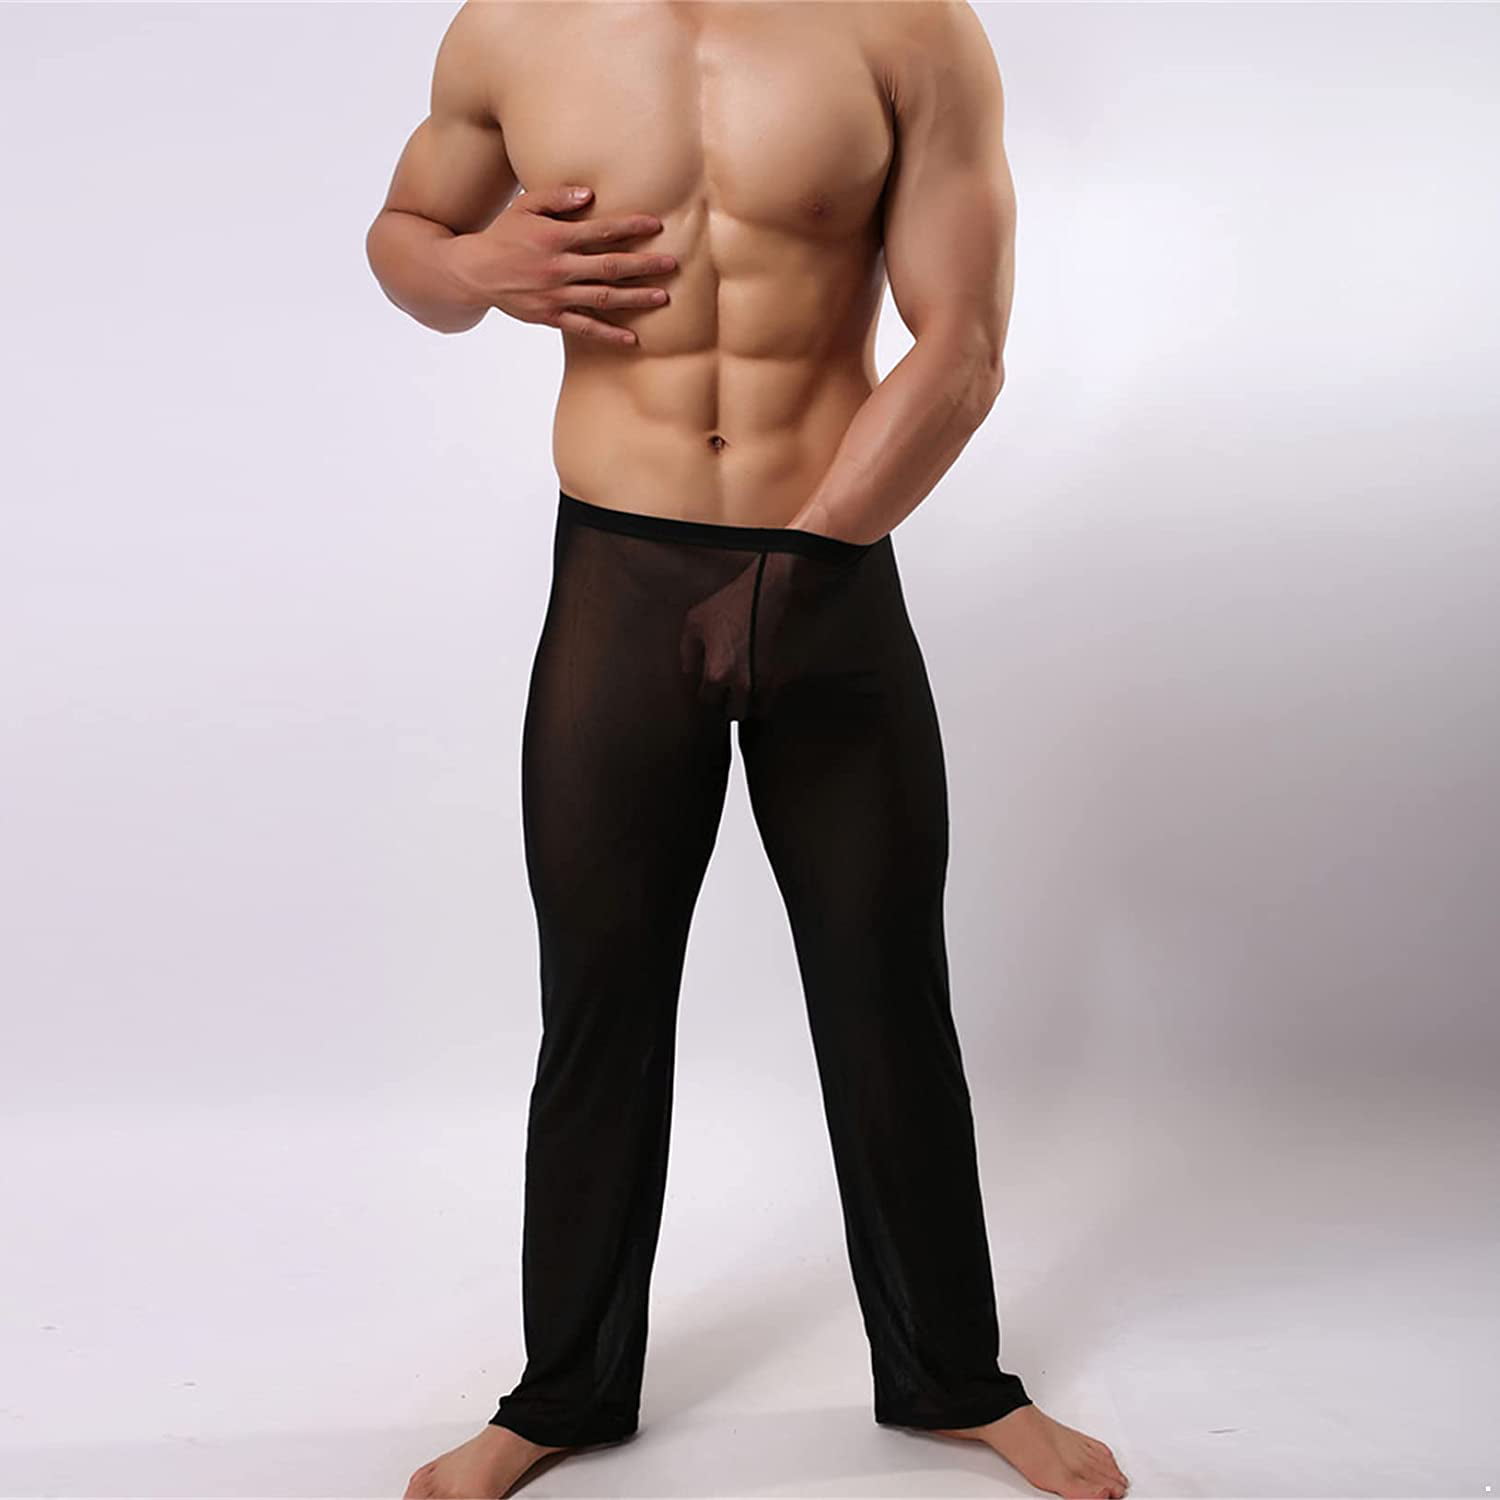 Freebily Homme Pantalons de Sport Yoga Pyjama Transparent en Mesh Lingerie Long Pantalon de Chambre Lounge Pantalons sous Vêtements de Nuit M-XL 